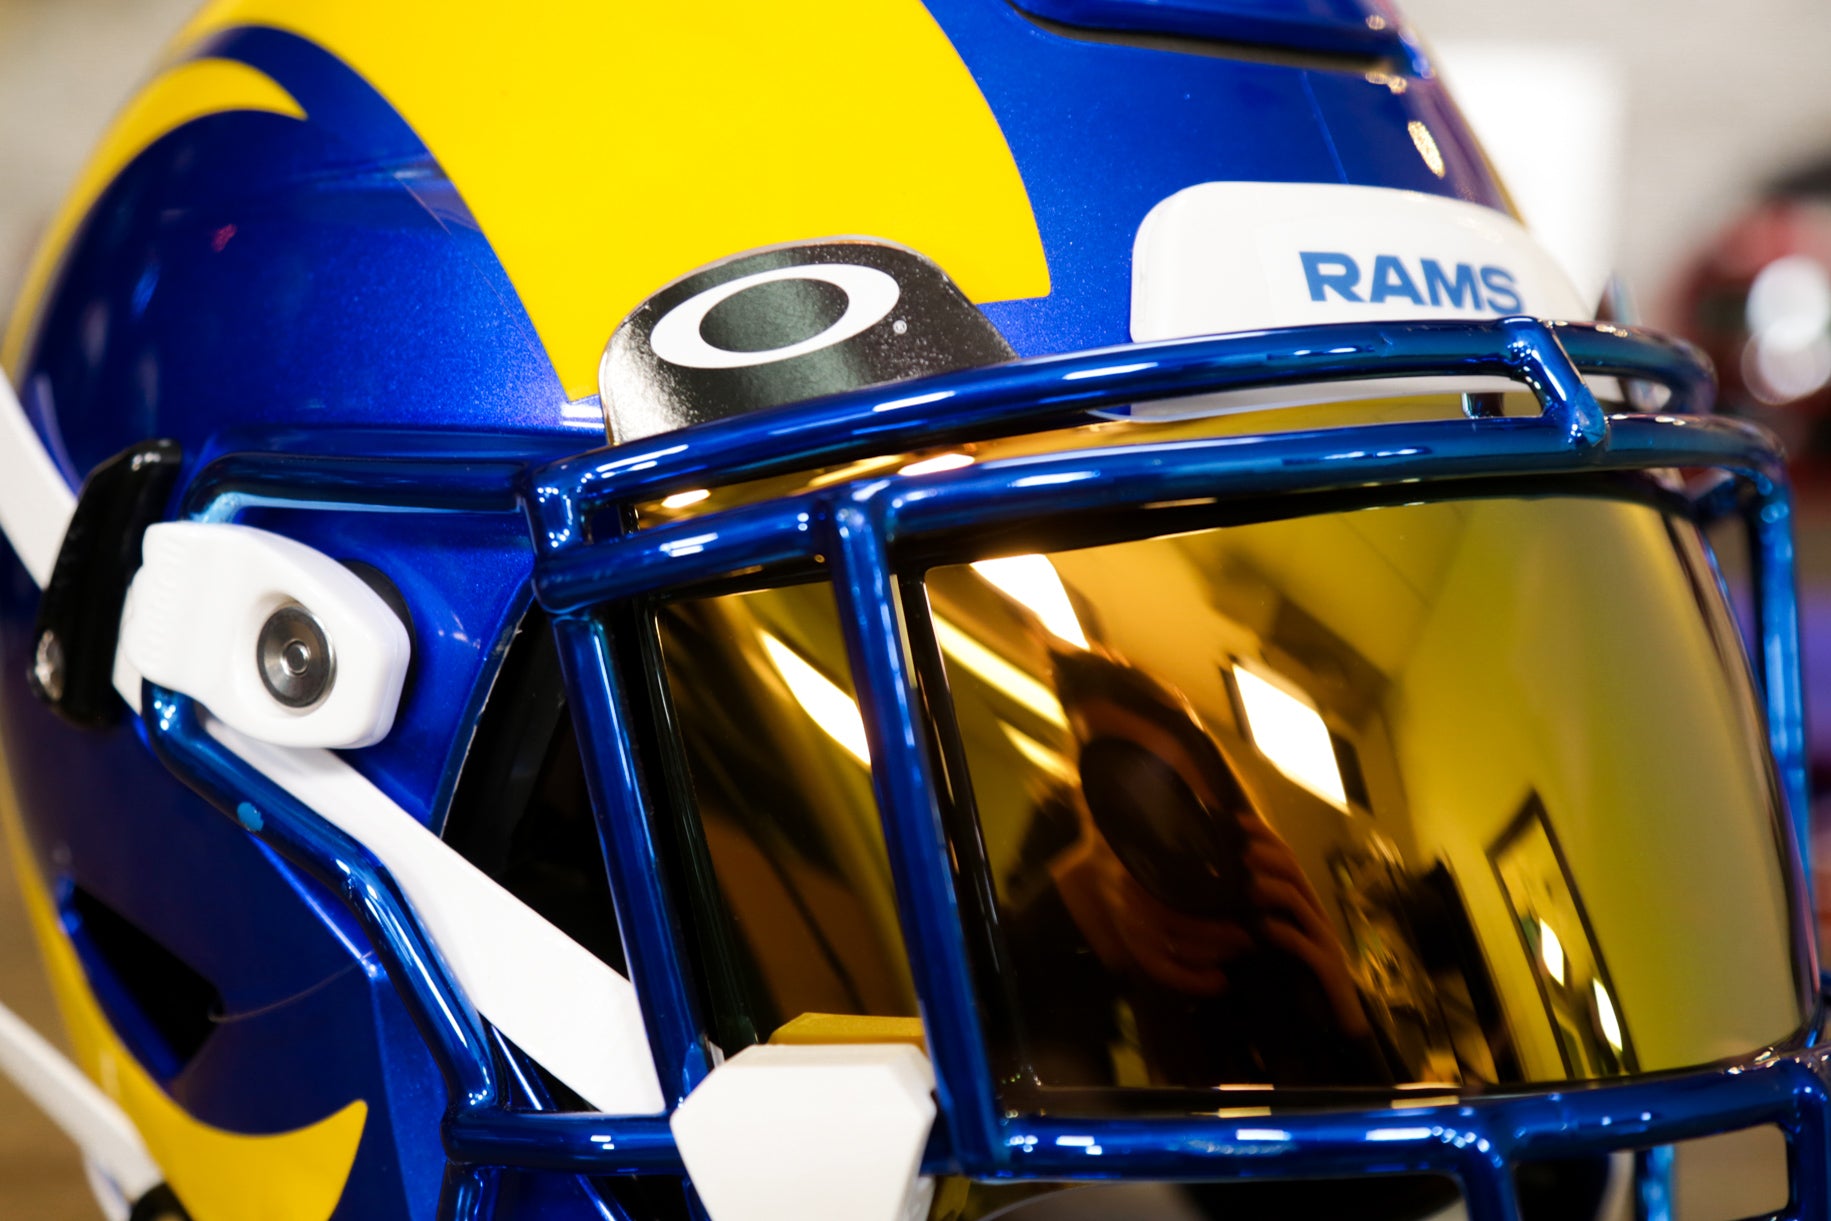 Los Angeles Rams 10 Speed Helmet Standee